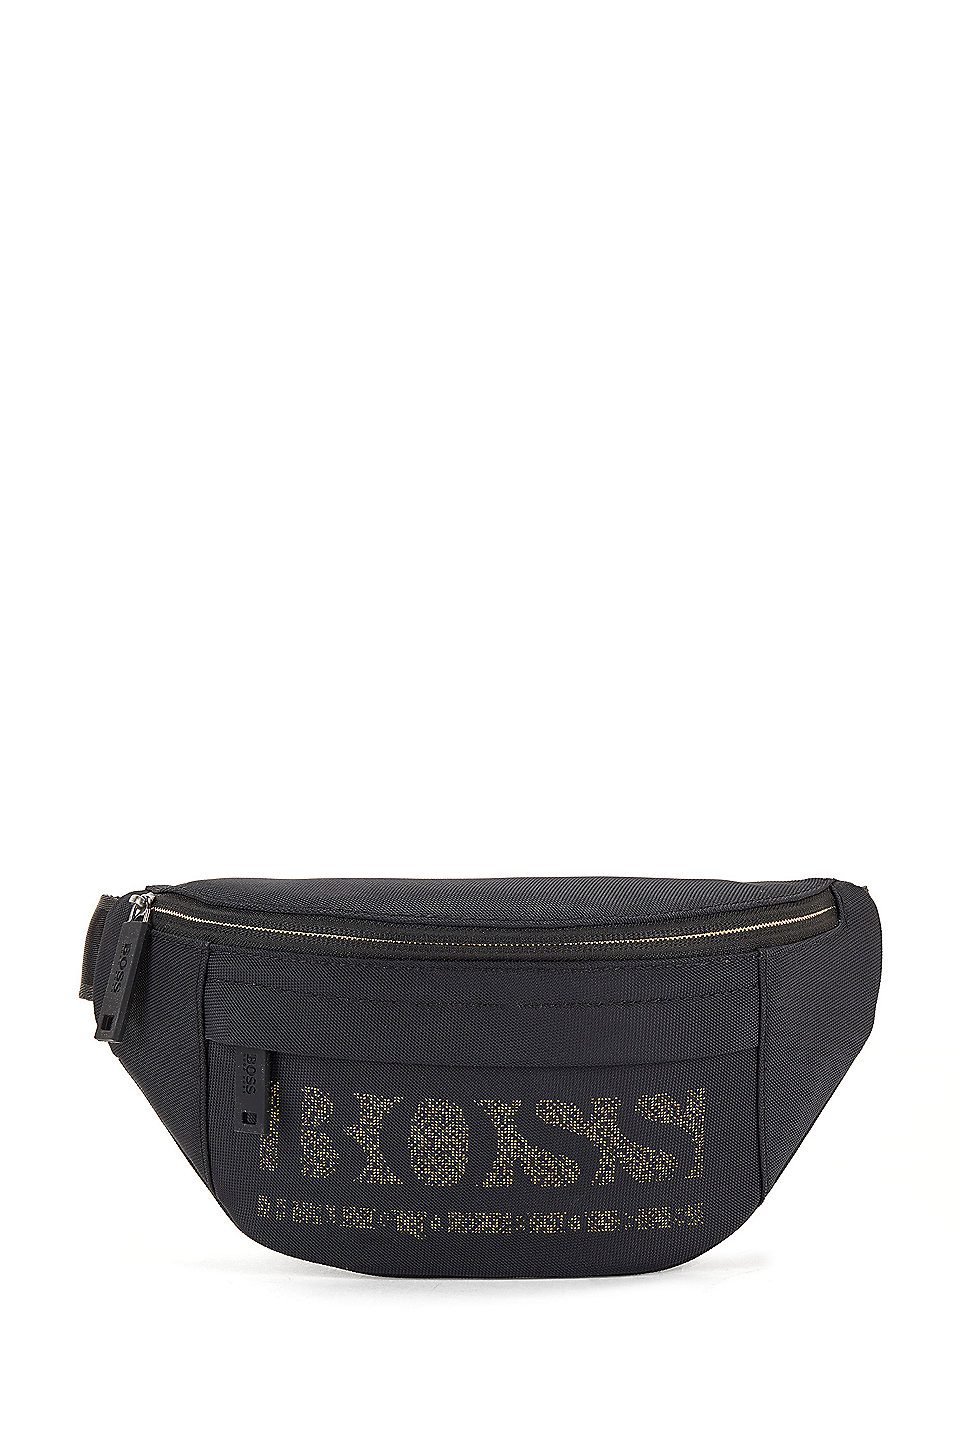 Hugo Boss Hip Bag | lupon.gov.ph